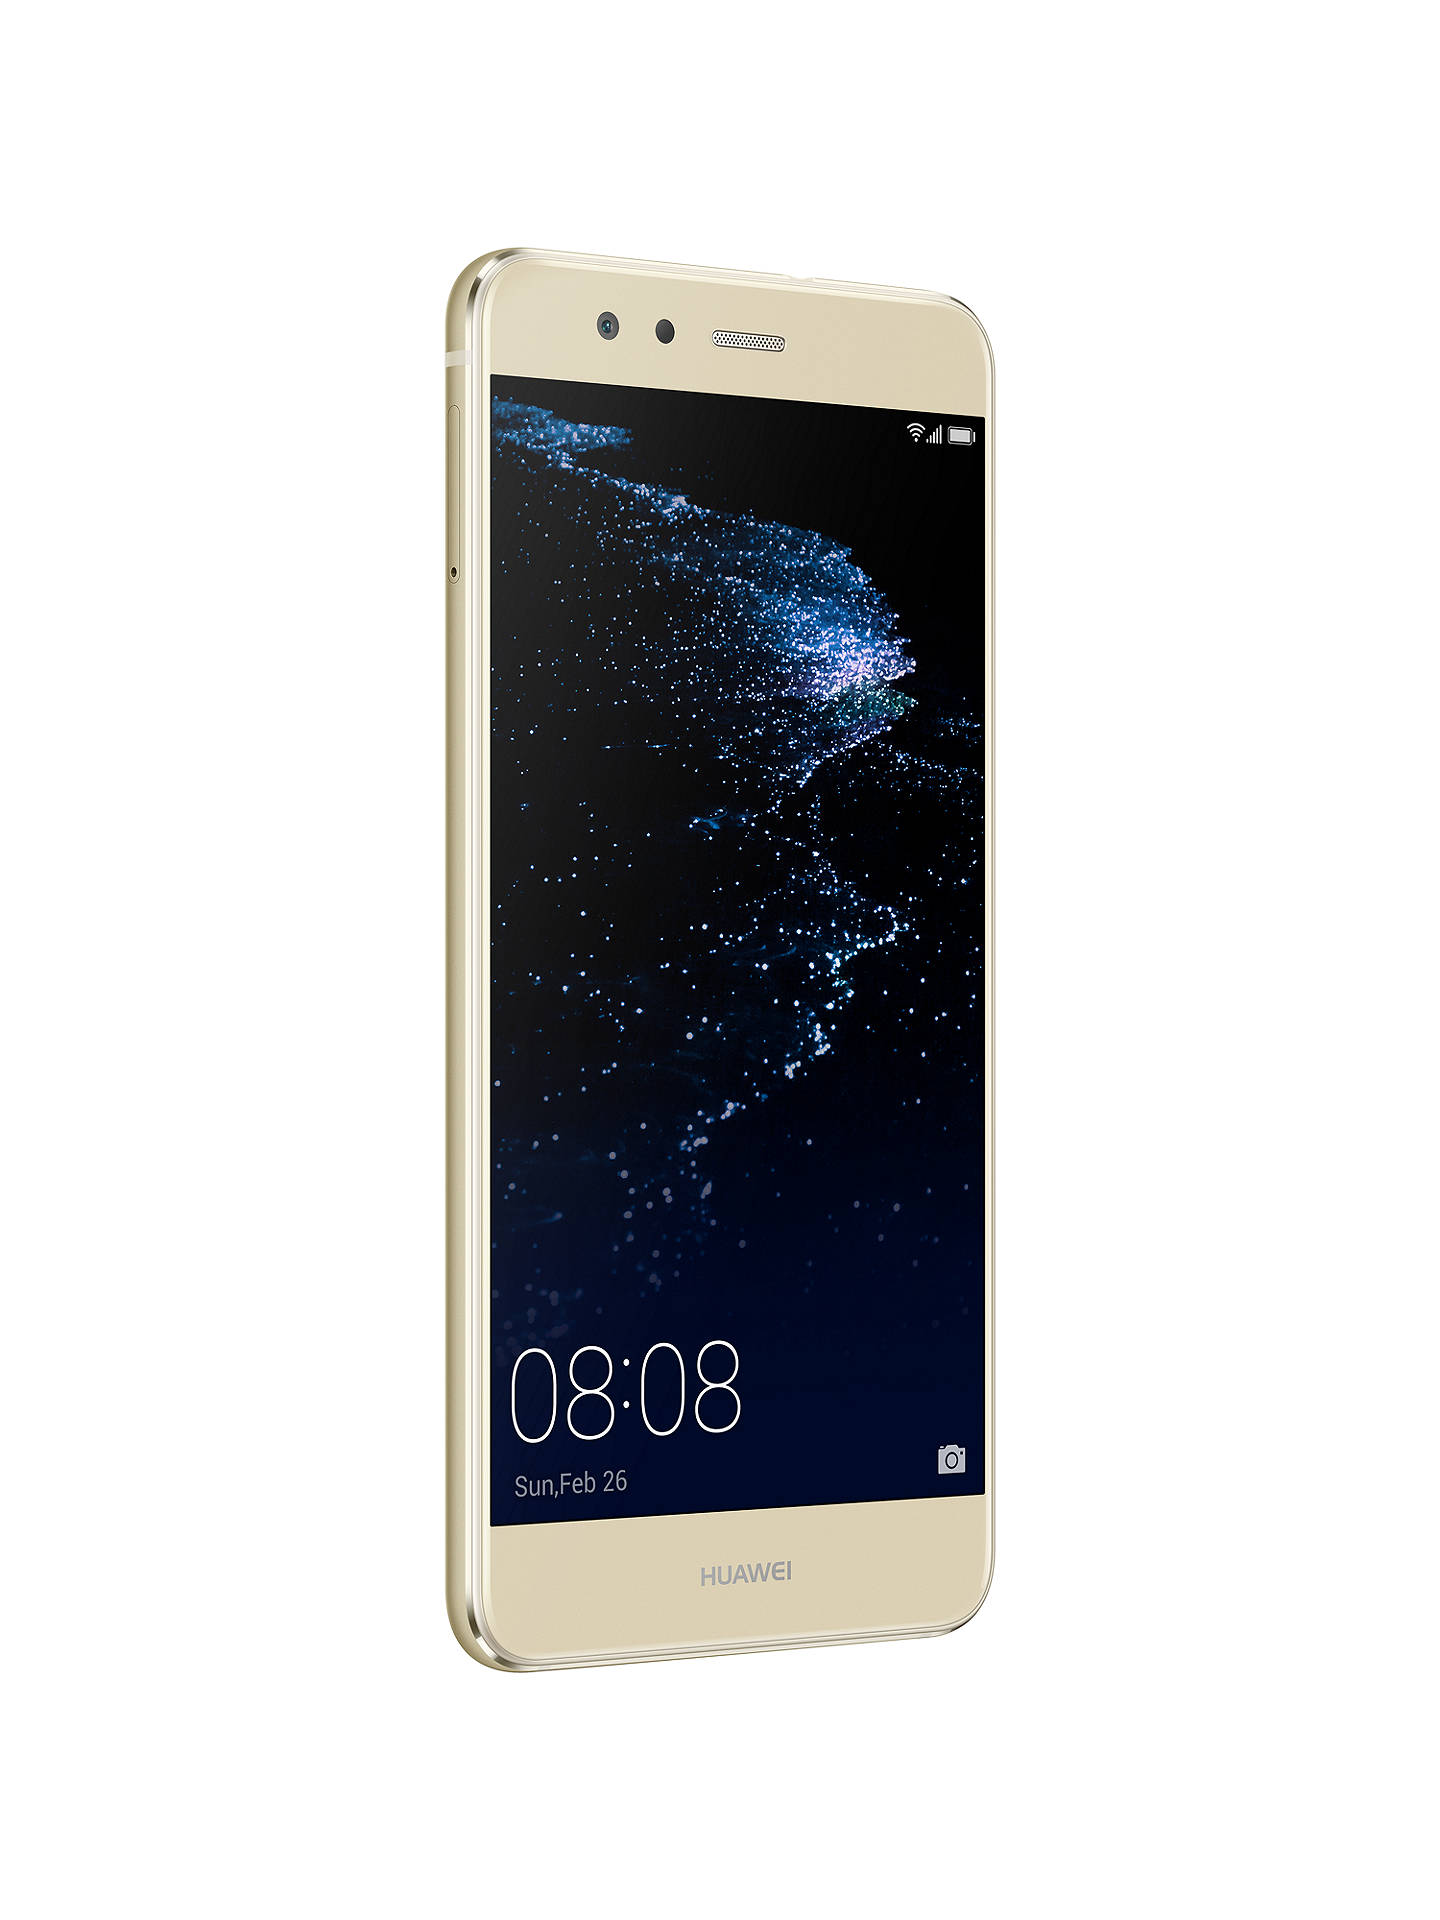 Huawei P10 Lite, Android, 5.2”, 4G LTE, SIM Free, 32GB at John Lewis